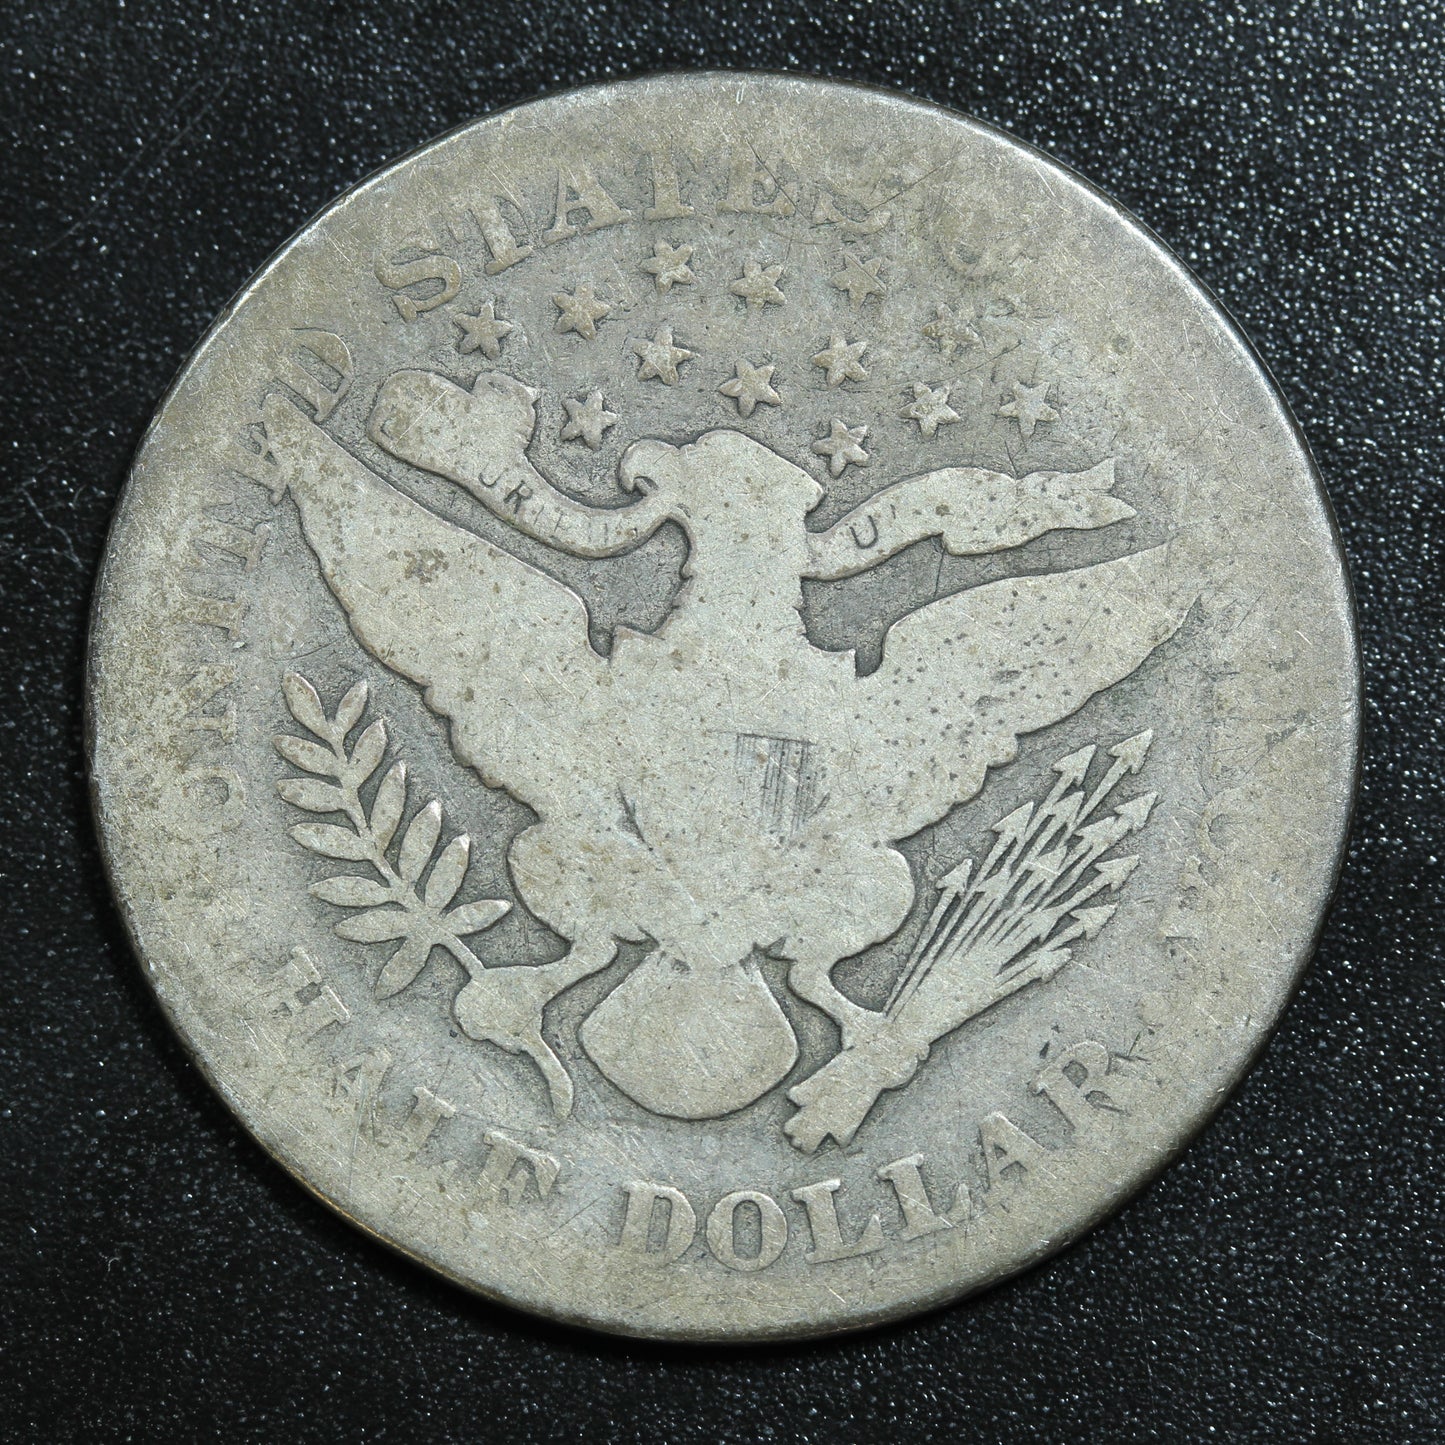 1904 P Barber Silver Half Dollar - Philadelphia